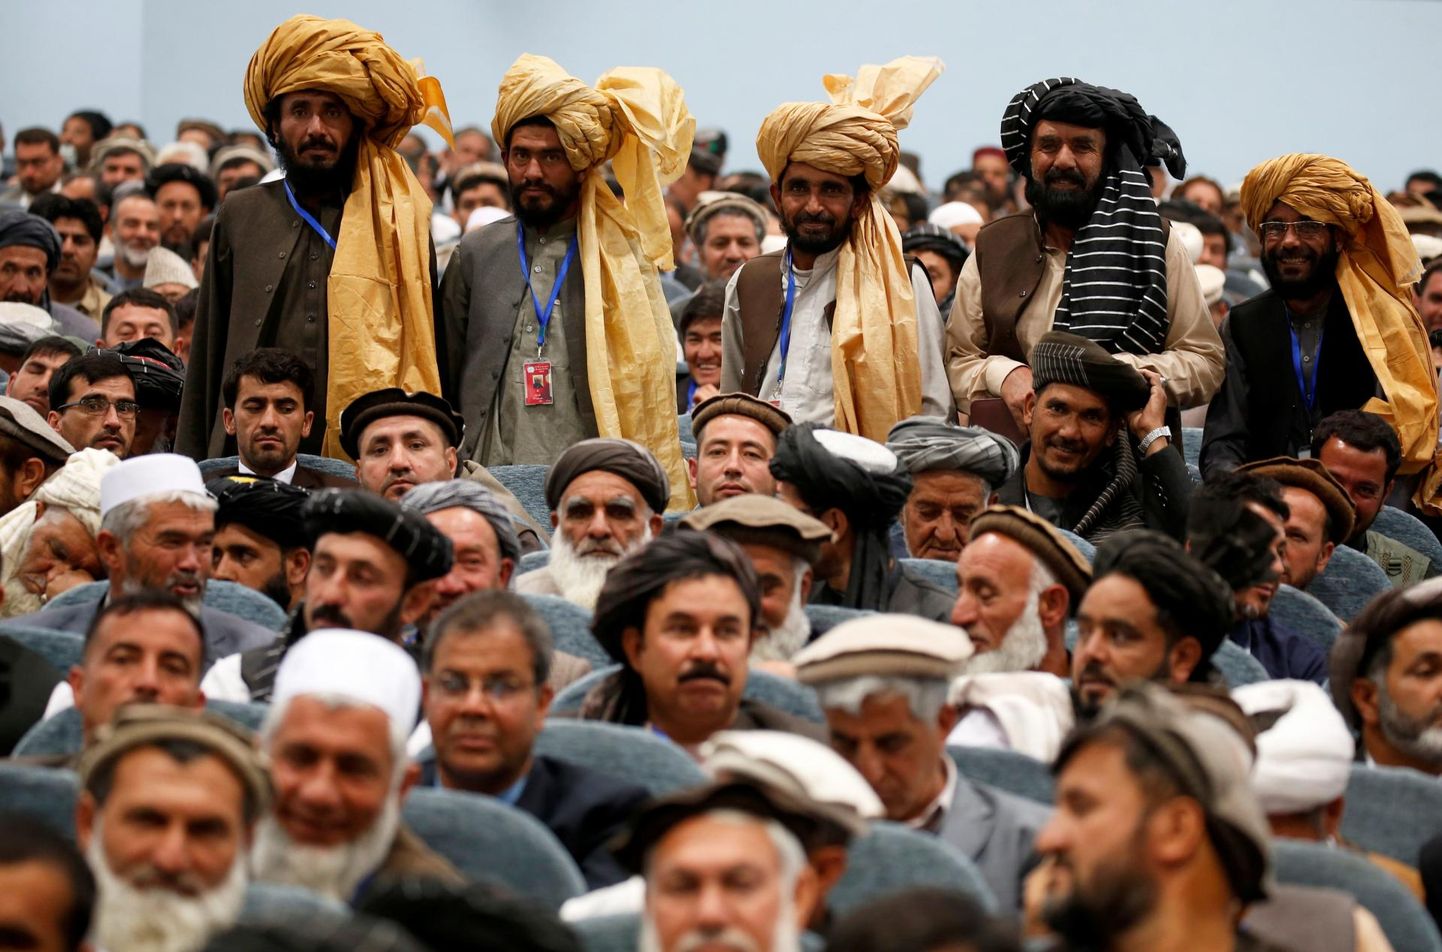 Hõimuvanemate suurkogu ehk Loya jirga 2019. aasta aprillis Kabulis. Loya jirga on Afganistani kõige võimsam institutsioon, kuhu kuuluvad kõikide hõimude tähtsaimad esindajad. 